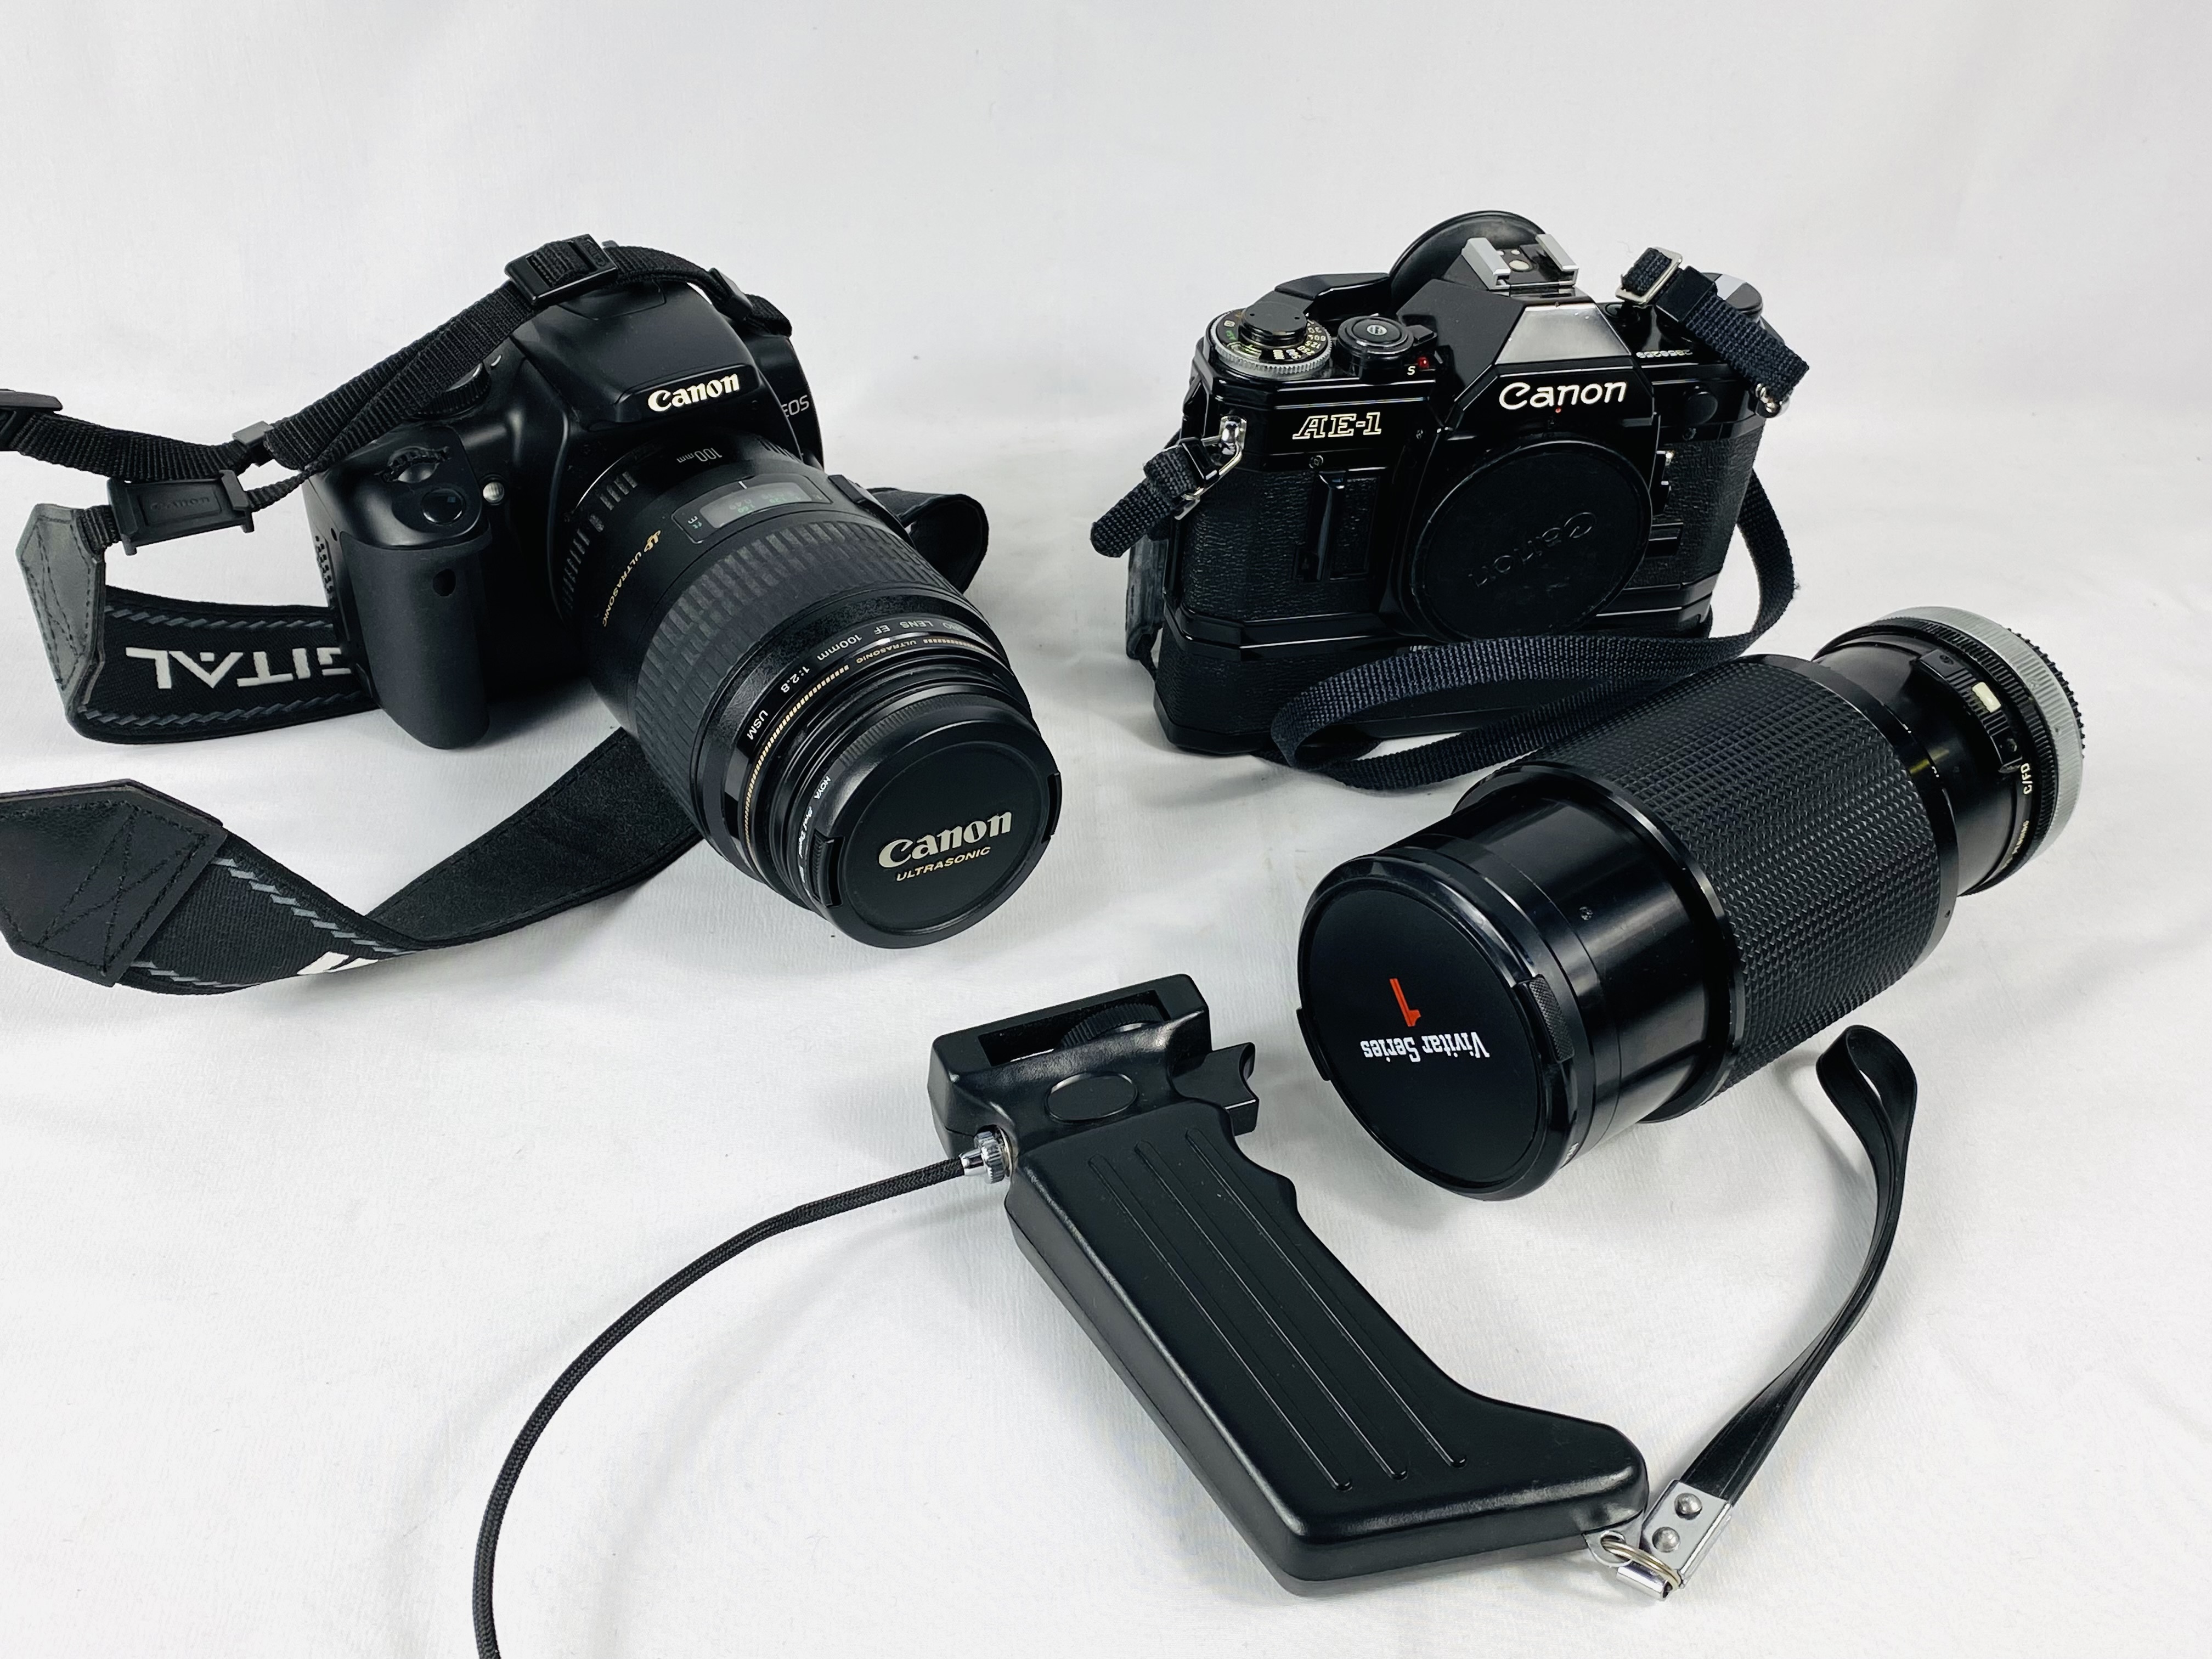 Canon EOS 400D camera and a Canon AE-1 camera